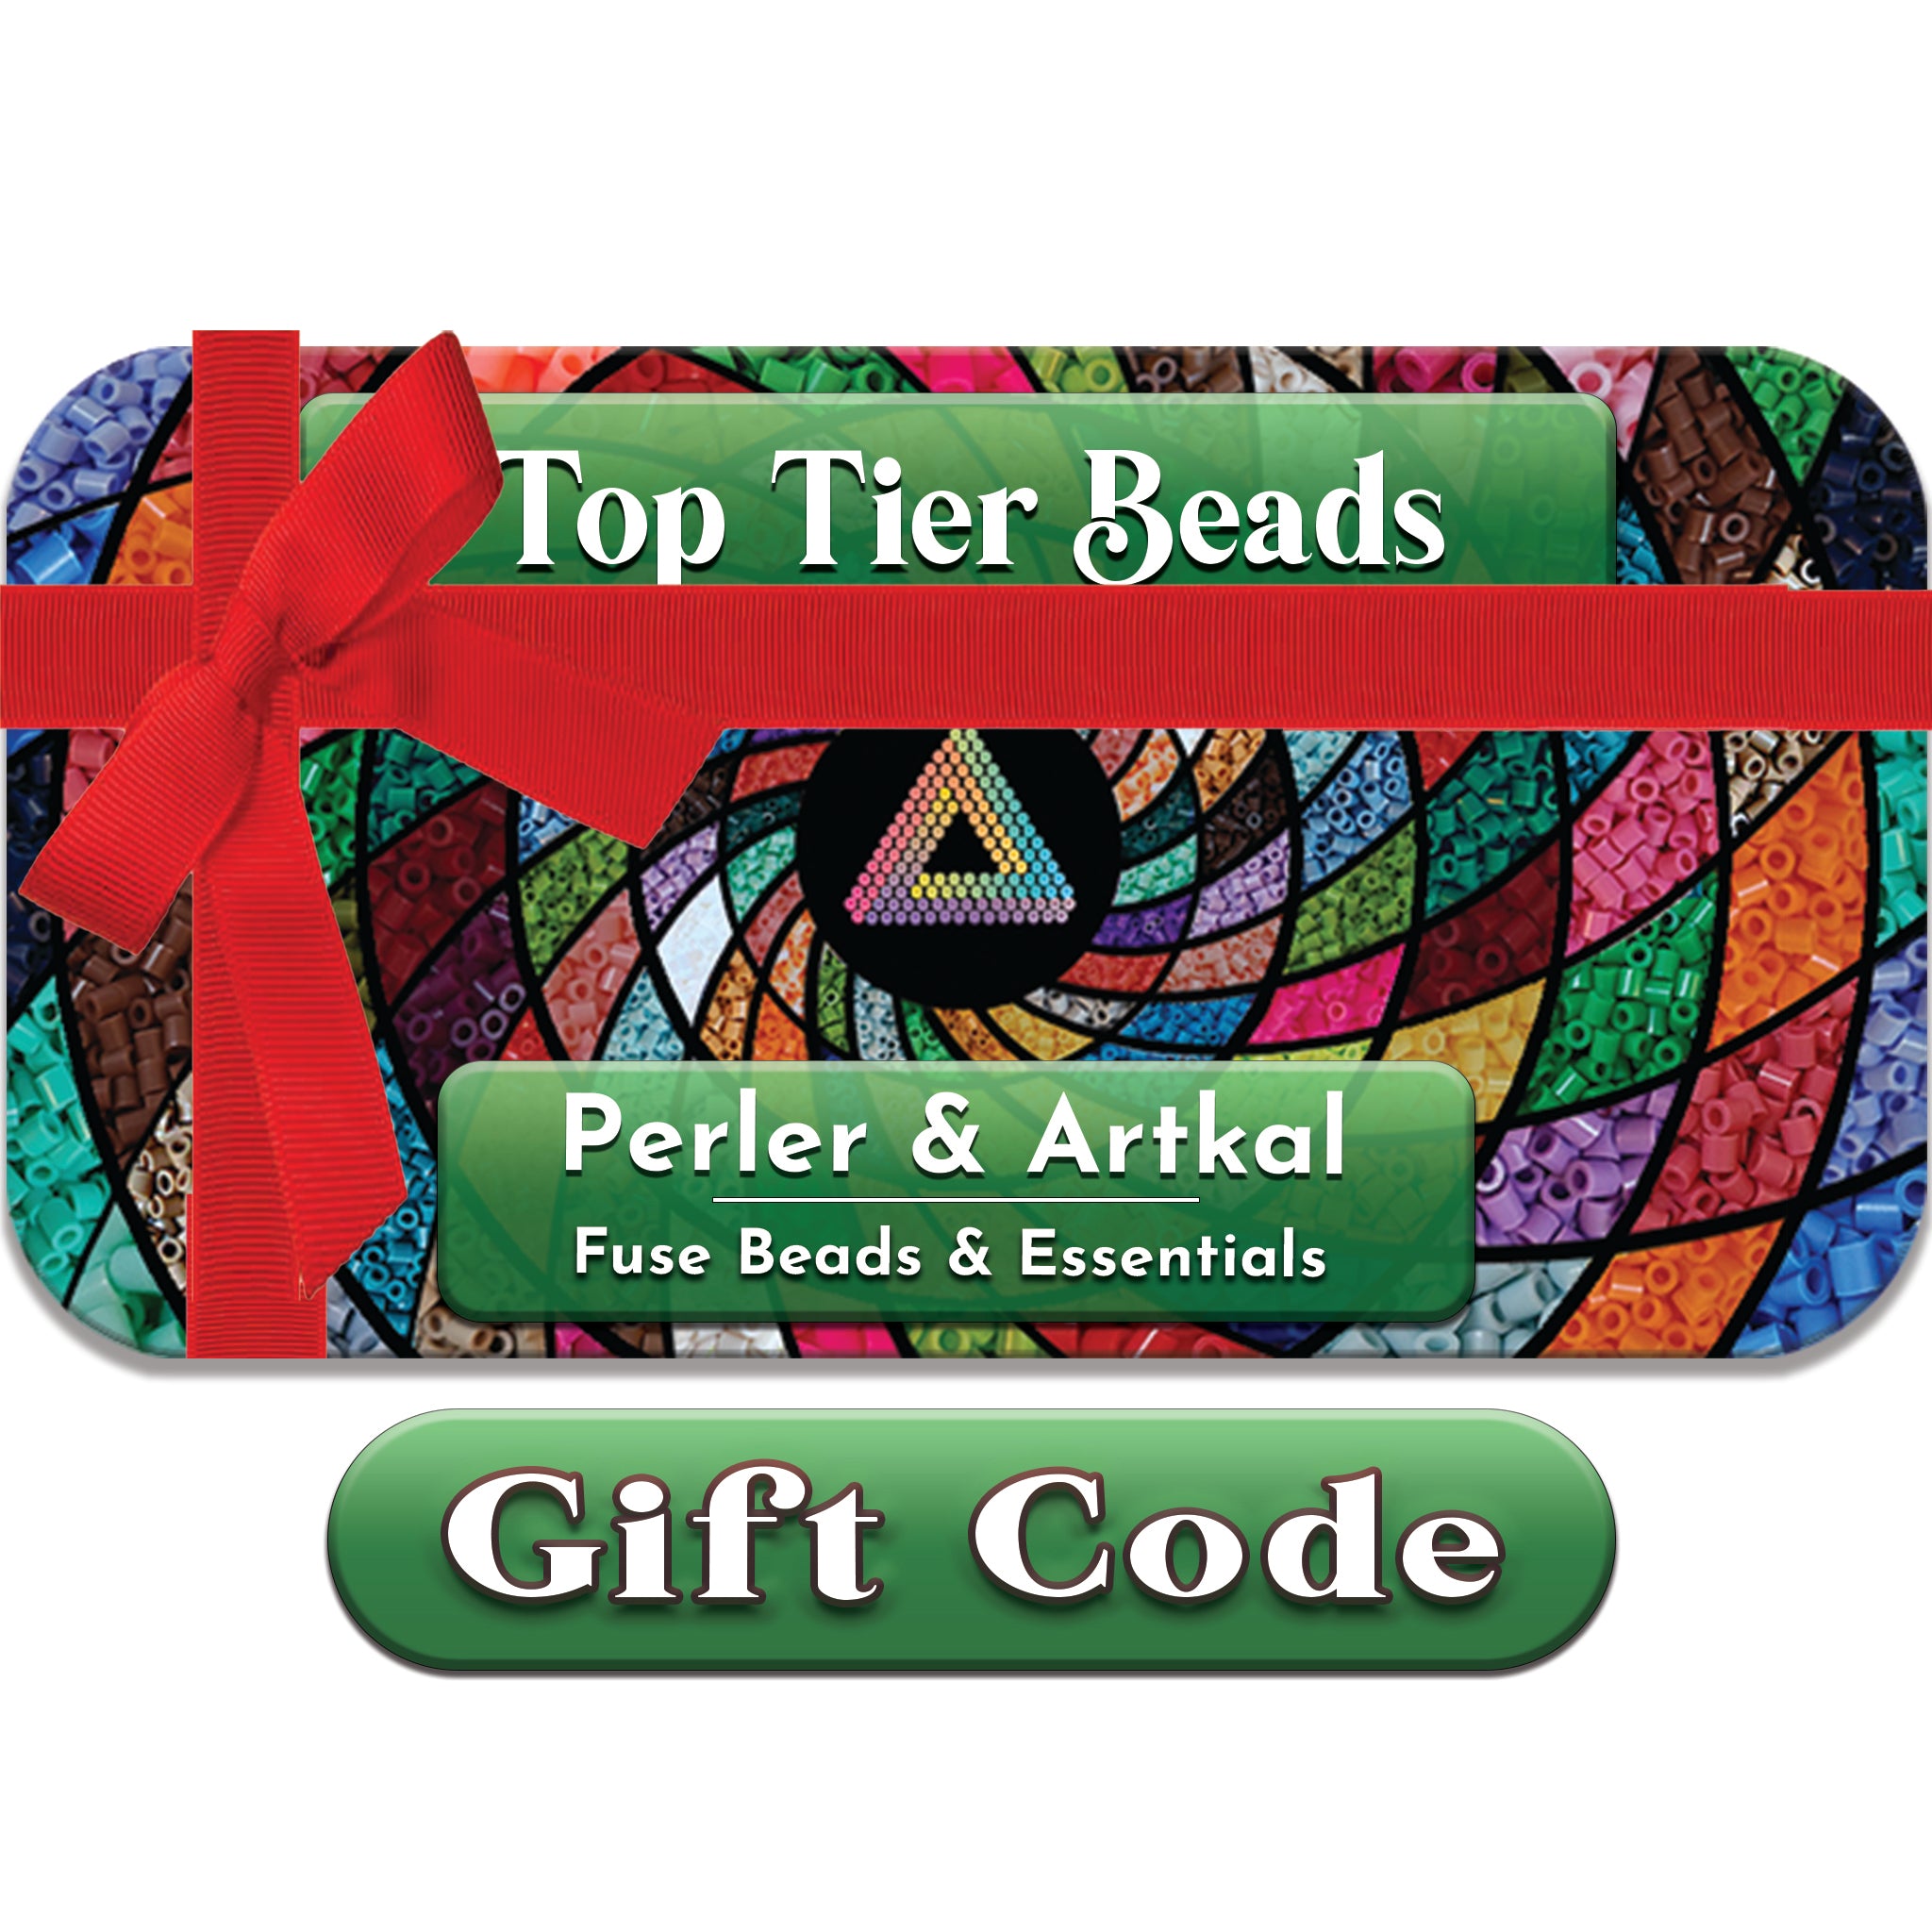 Sanders operatør kasket Top Tier Beads Gift Code